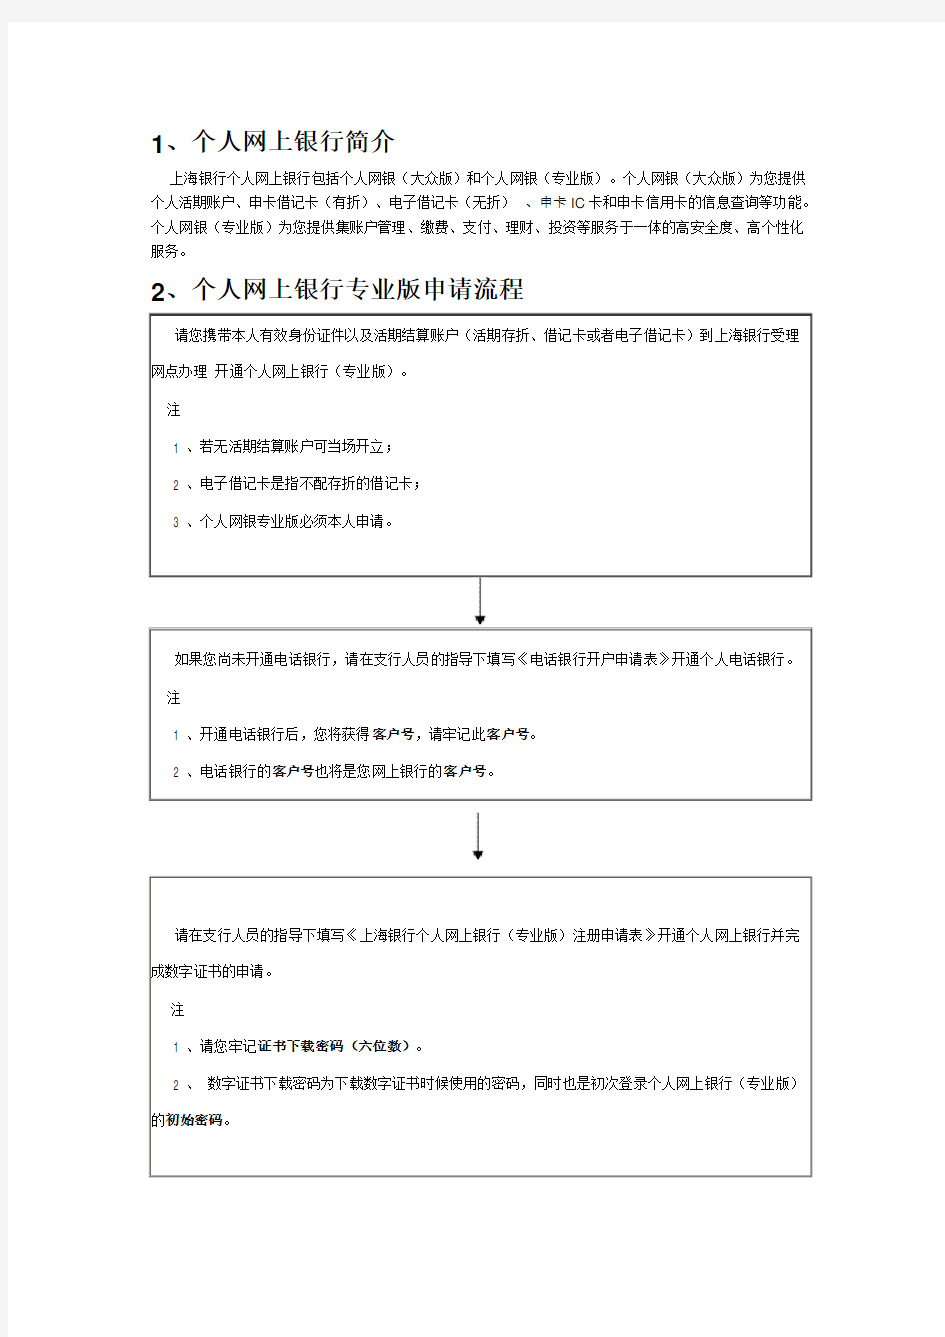 上海银行网上银行个人网上银行用户操作手册